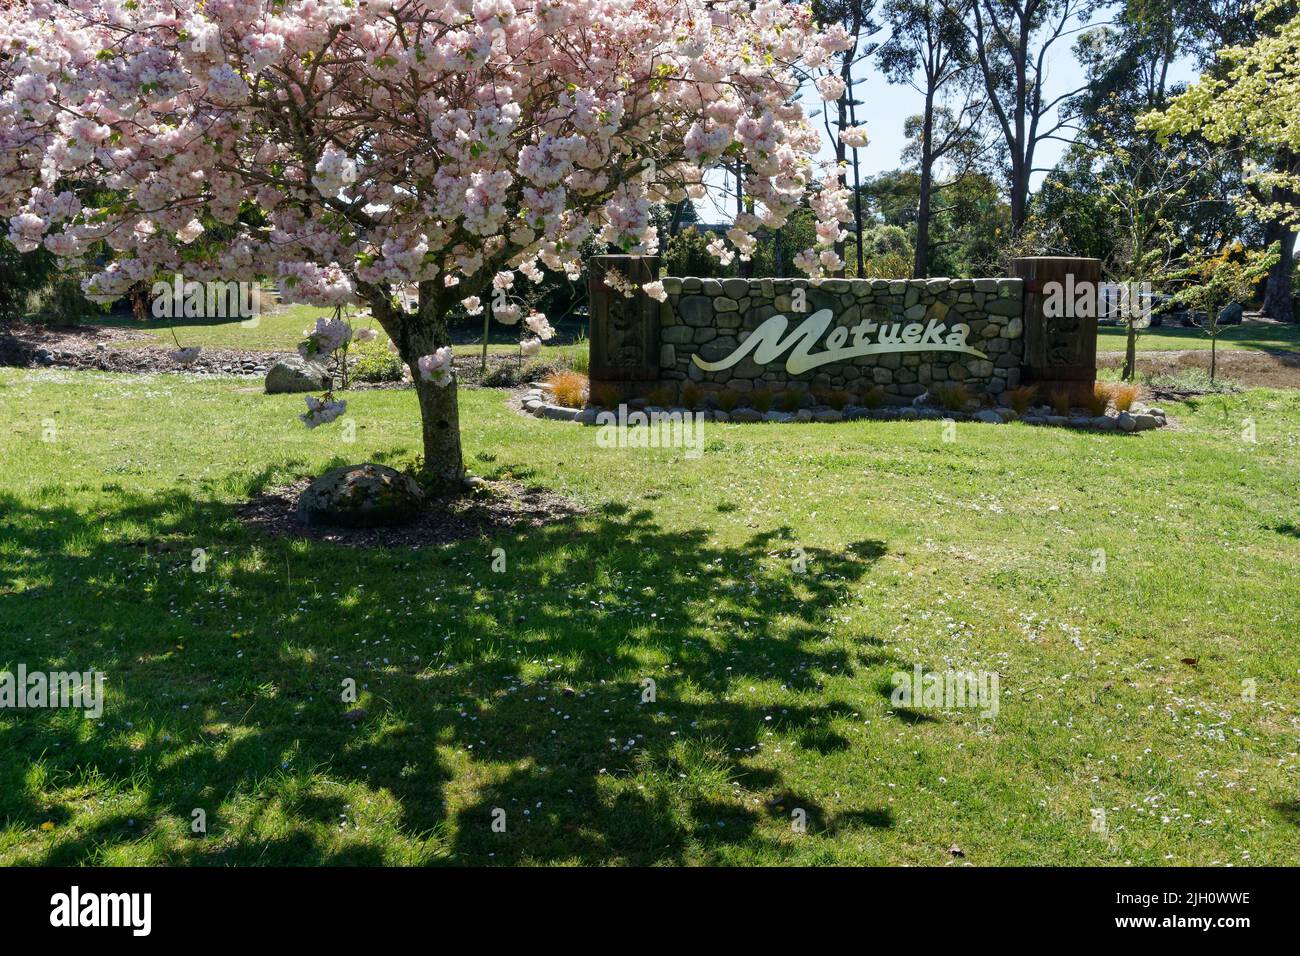 Motueka segno sotto fiore primaverile, Motueka, Tasman regione, isola sud, Aotearoa / Nuova Zelanda Foto Stock